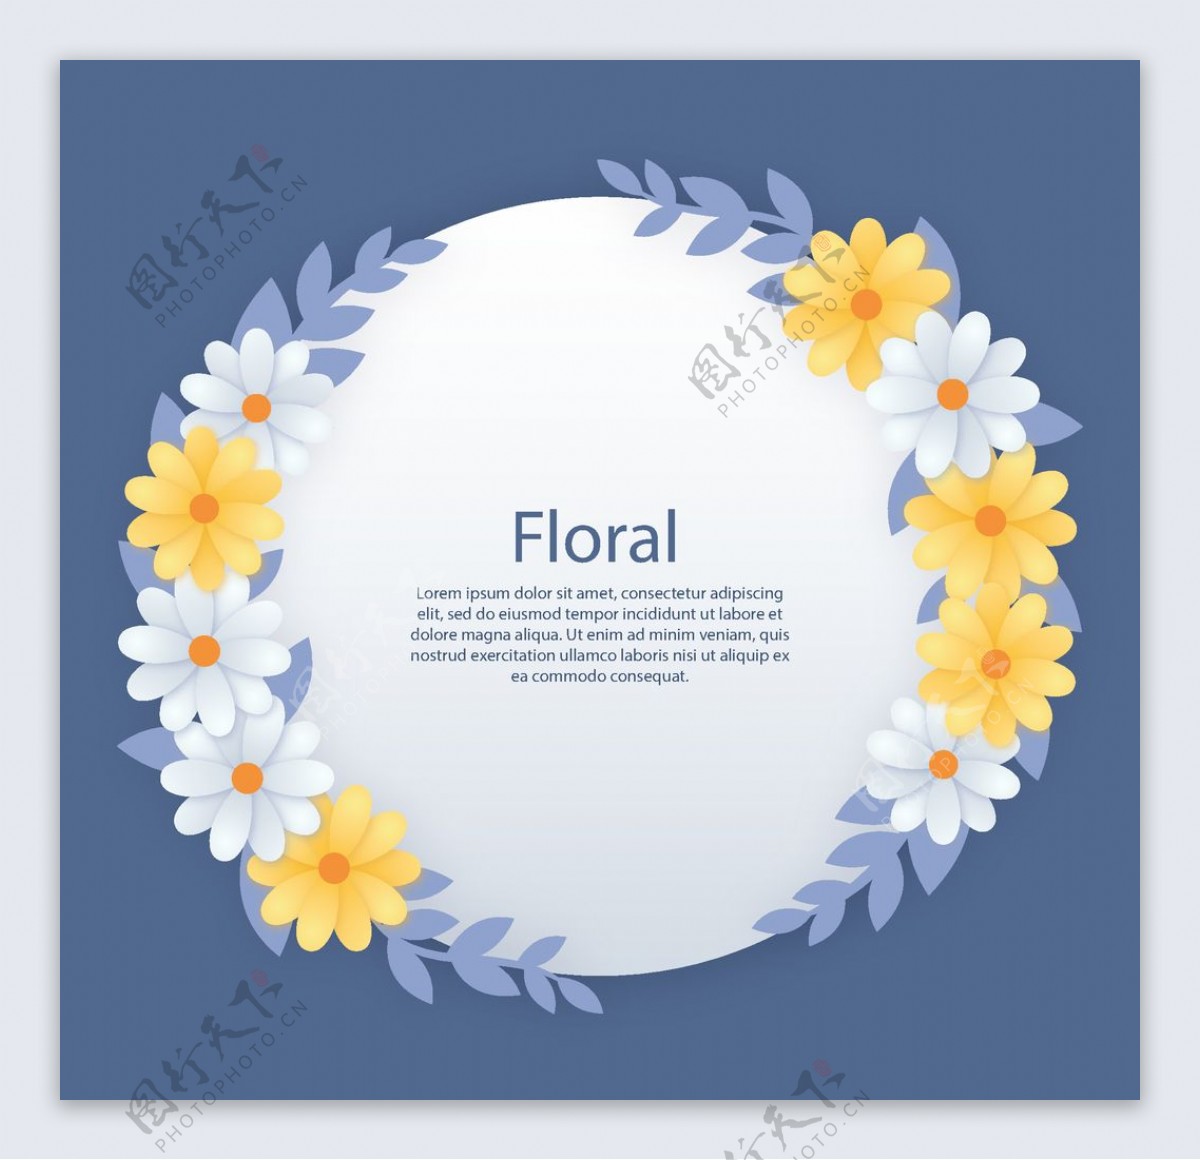 花卉卡片